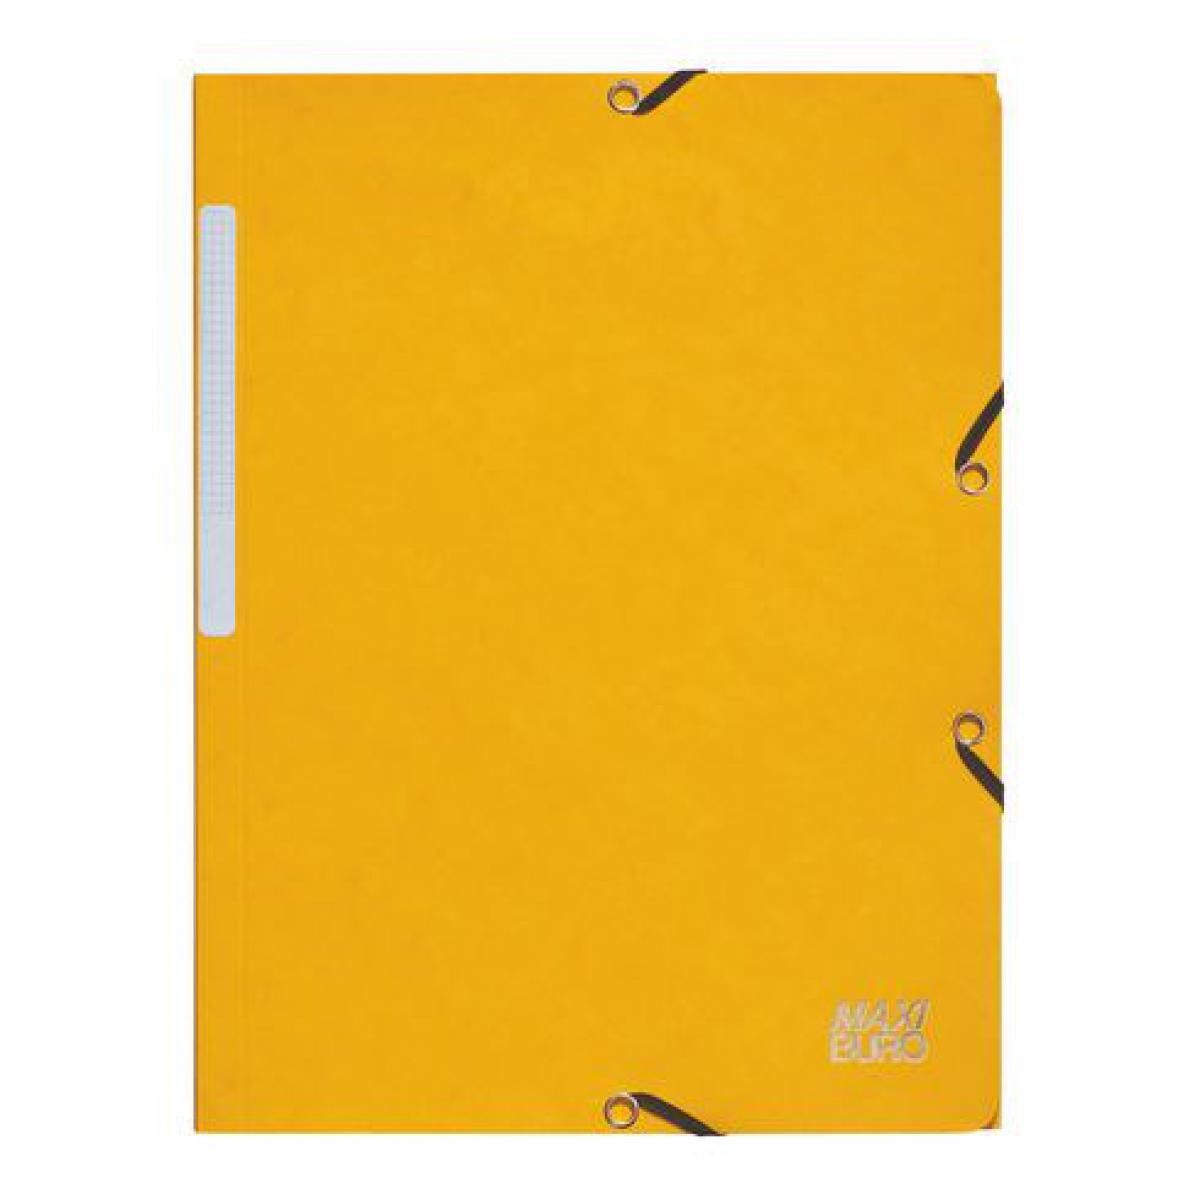 Maxiburo - Chemise jaune à élastique format A4 - Maxiburo - Lot de 10 - Accessoires Bureau